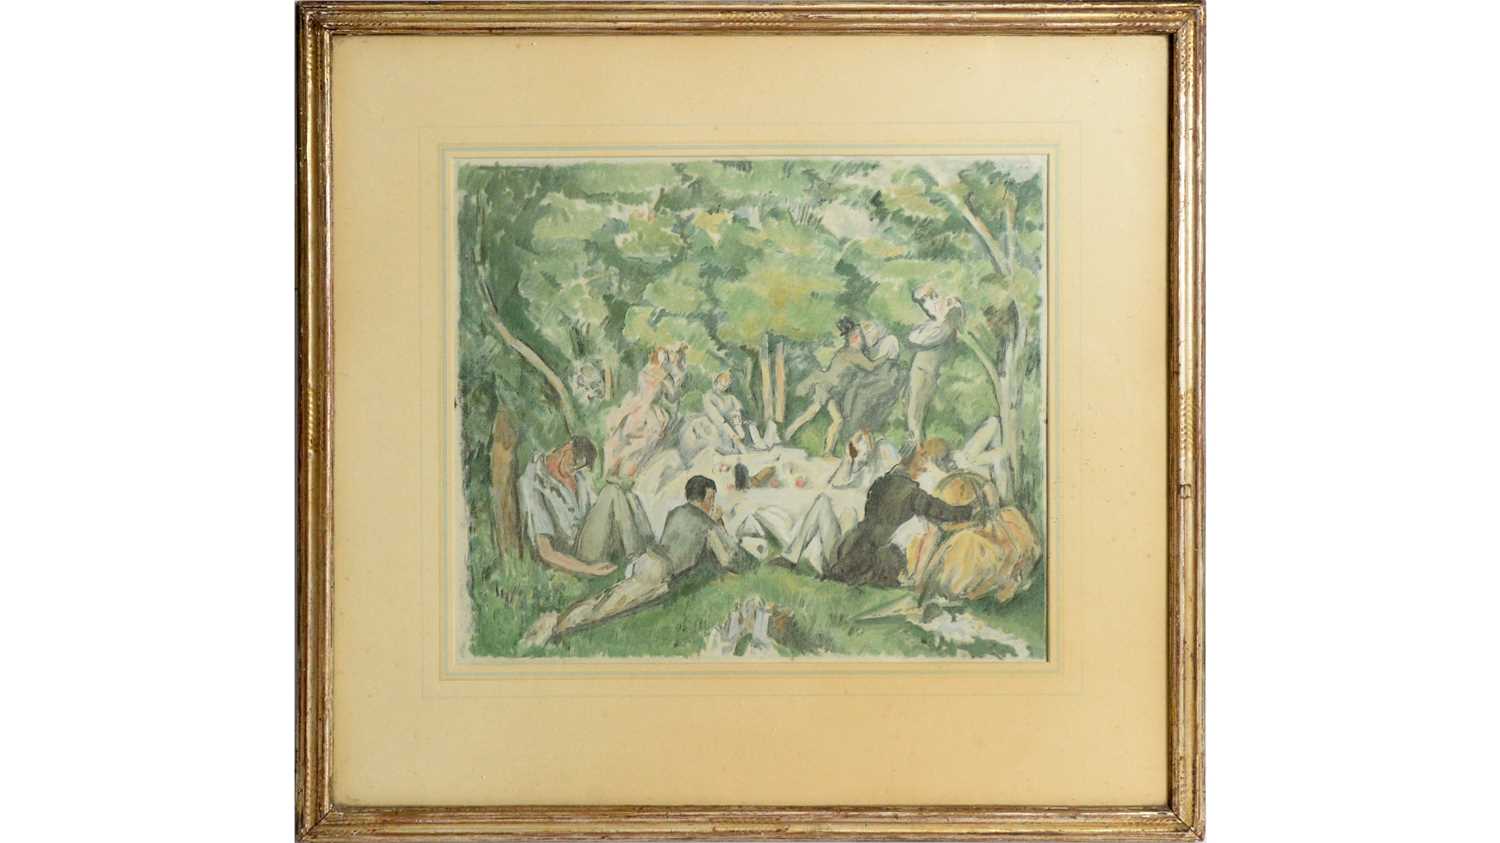 Lot 593 - After Paul Cezanne - Le Dejeuner sur l'herbe | colour lithograph